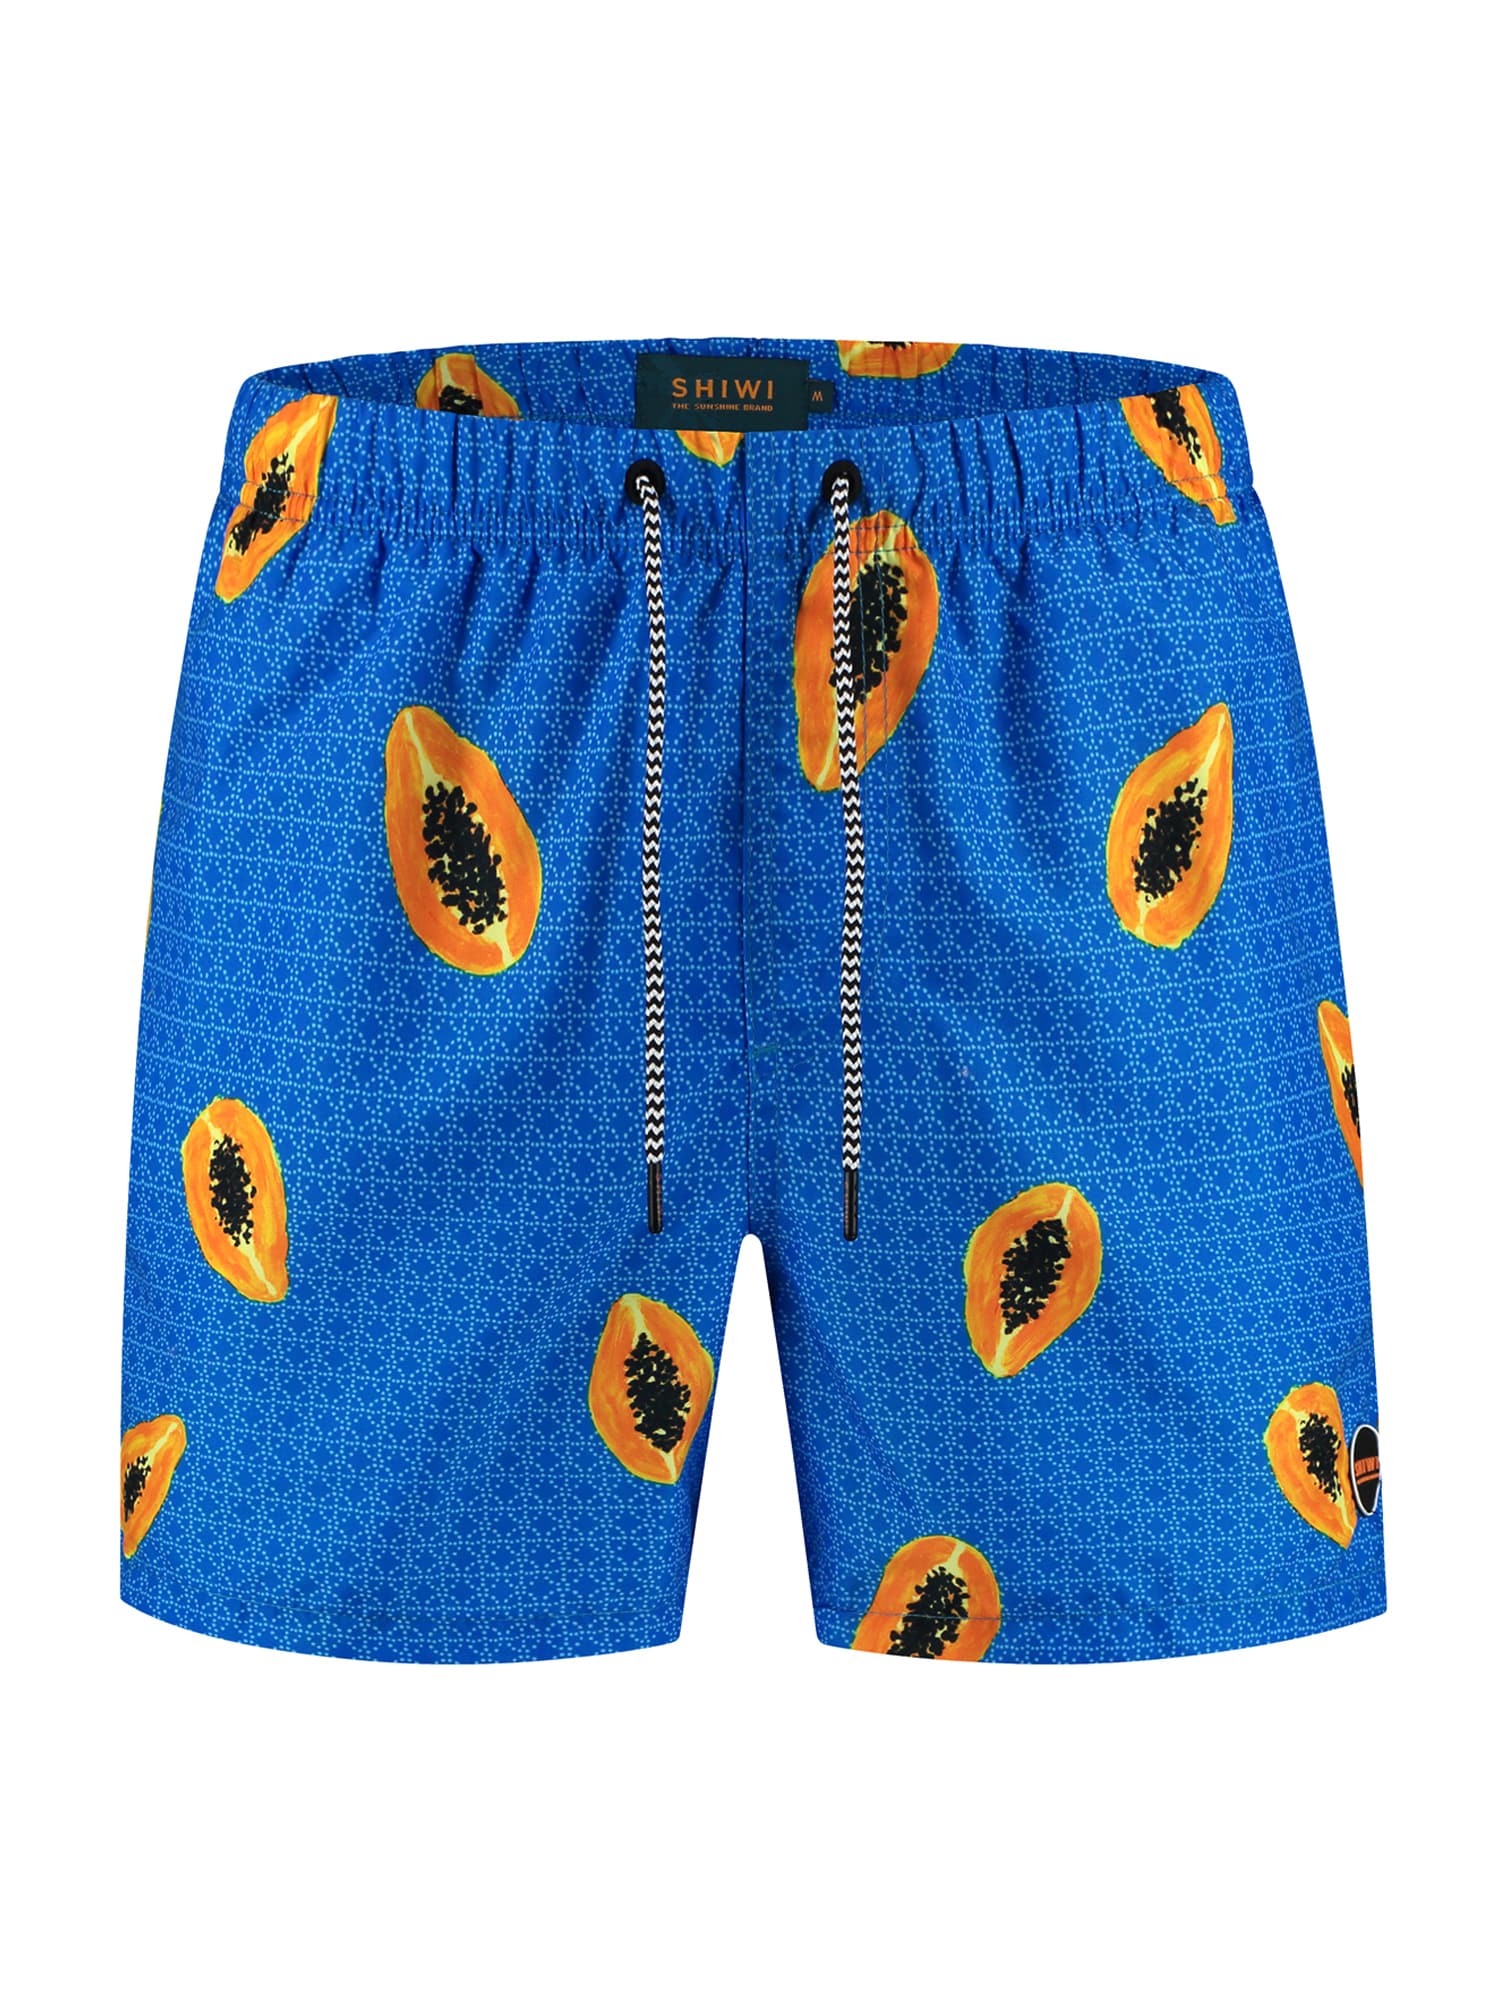 Shiwi Pantaloncini da surf 'Papaya' Blu